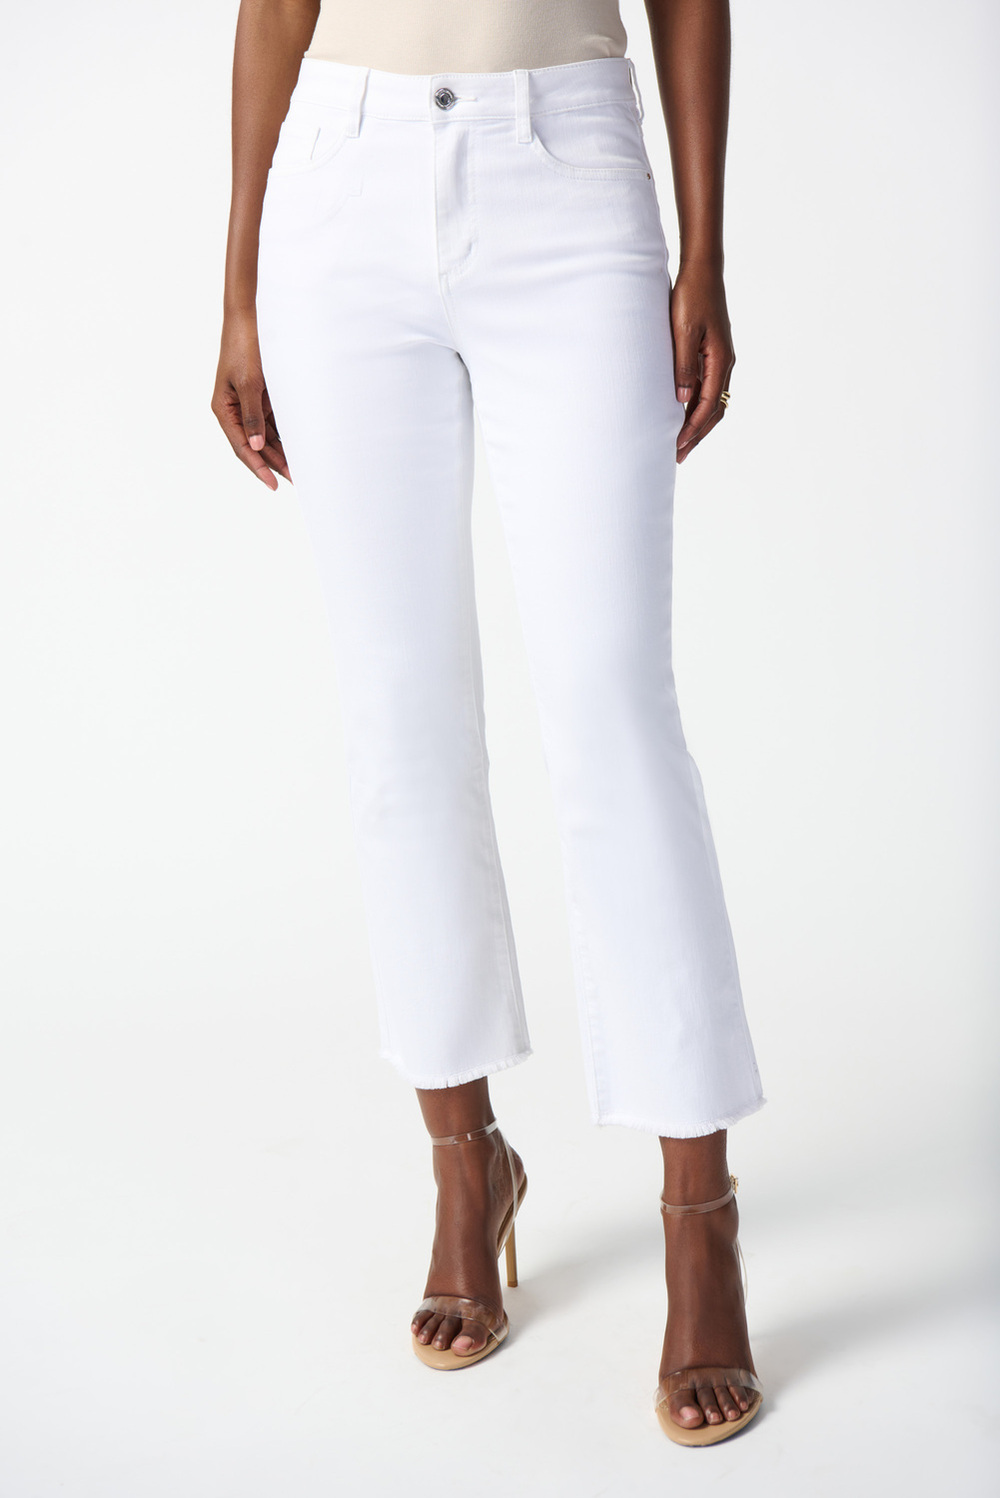 Pantalon 7/8, franges courtes modèle 242925. Blanc